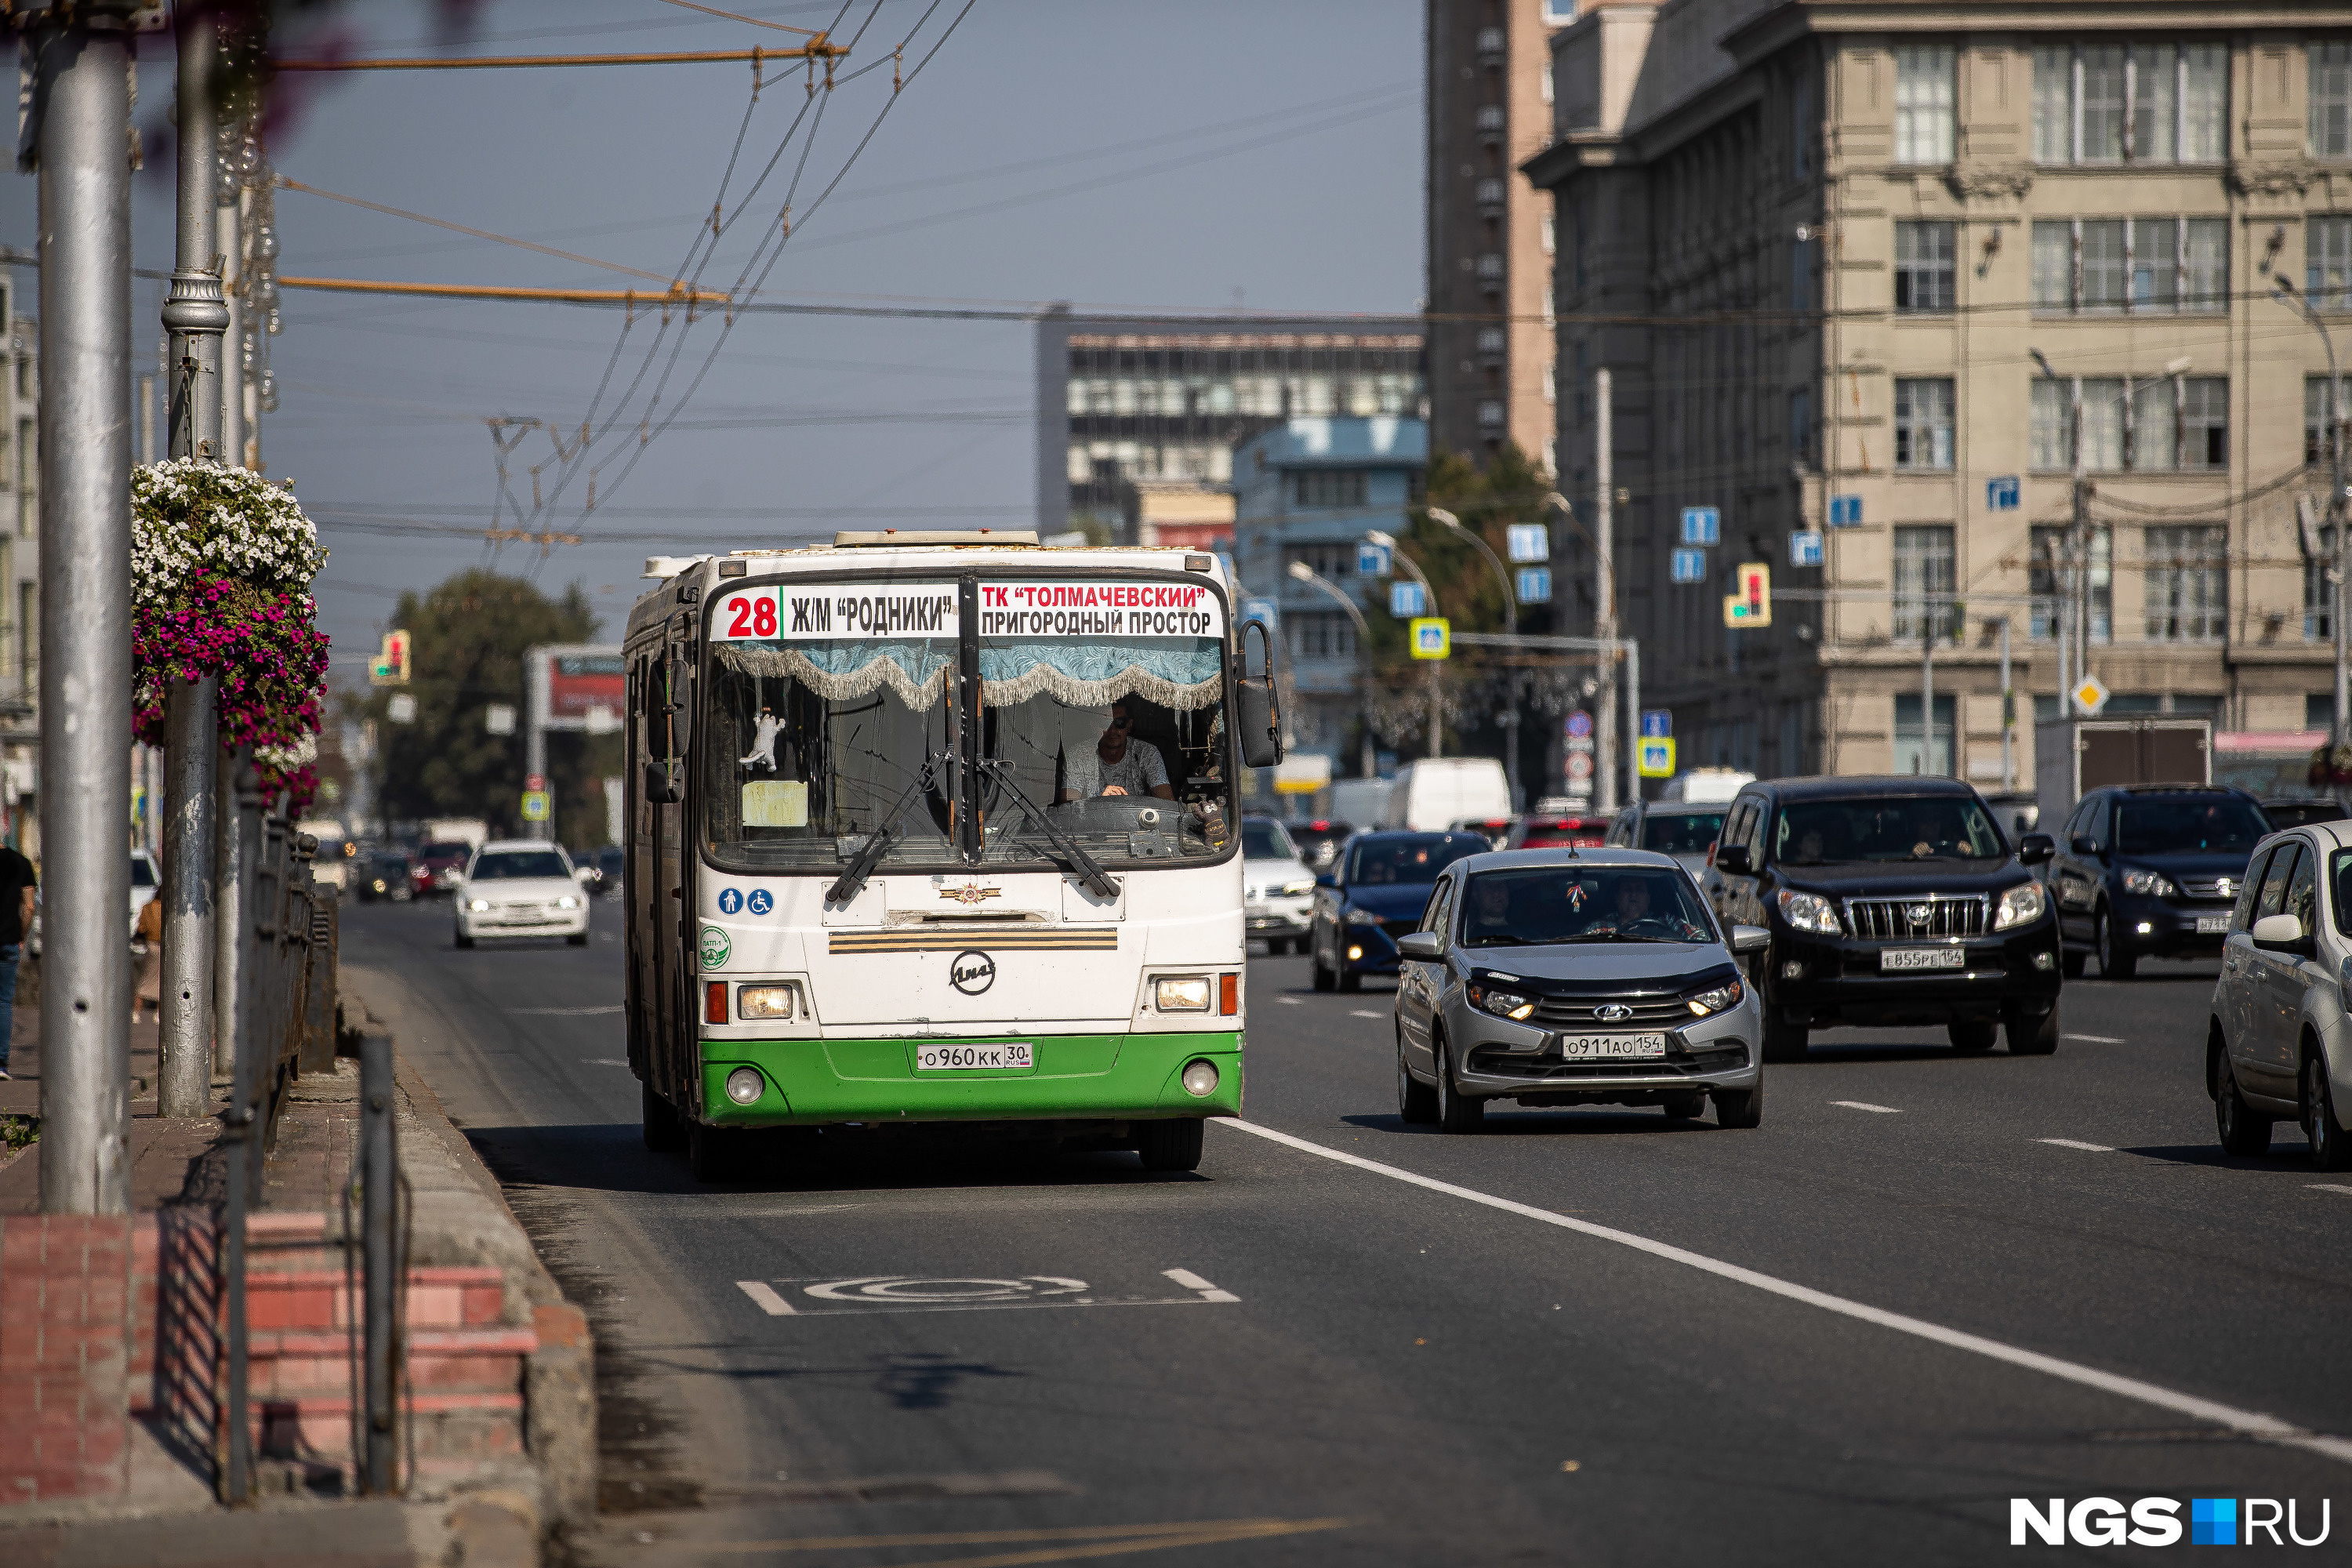 Триста пассажиров пожаловались в мэрию на плохую работу транспорта вечером в Новосибирске